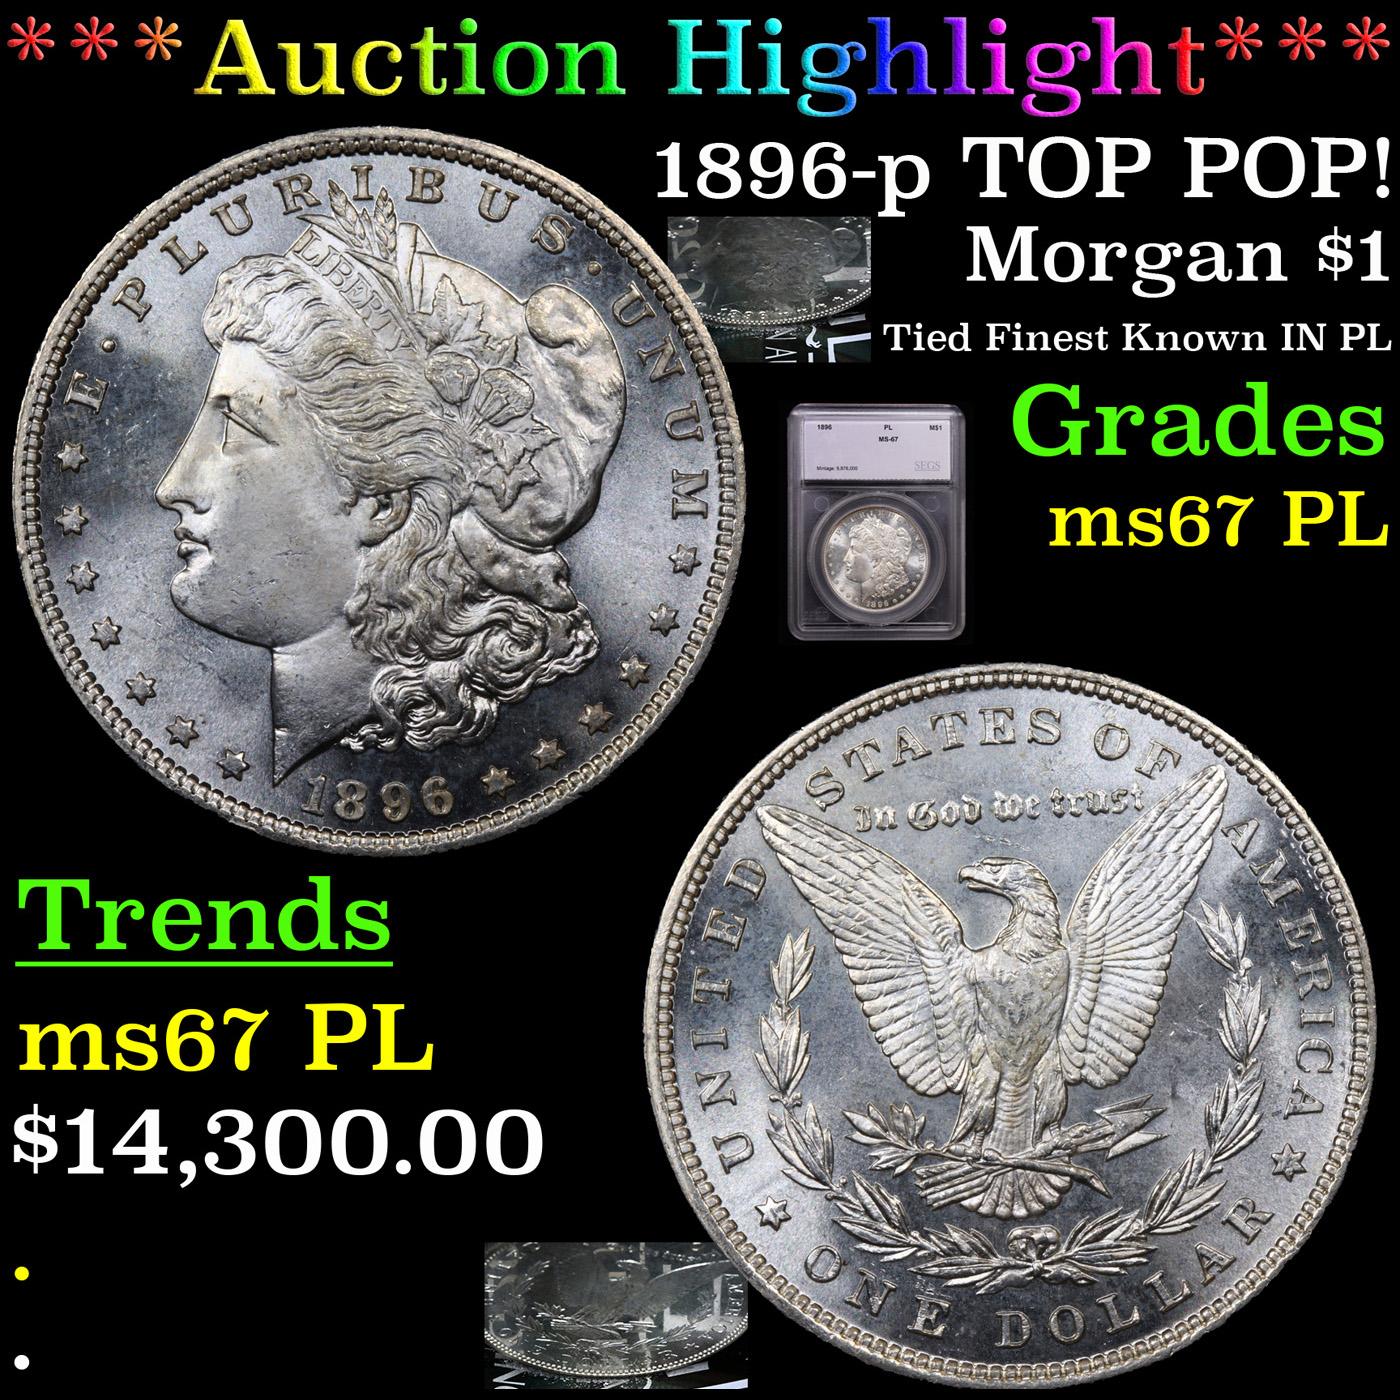 *HIGHLIGHT OF NIGHT** 1896-p TOP POP! Morgan Dollar $1 Graded ms67 PL By SEGS (fc)